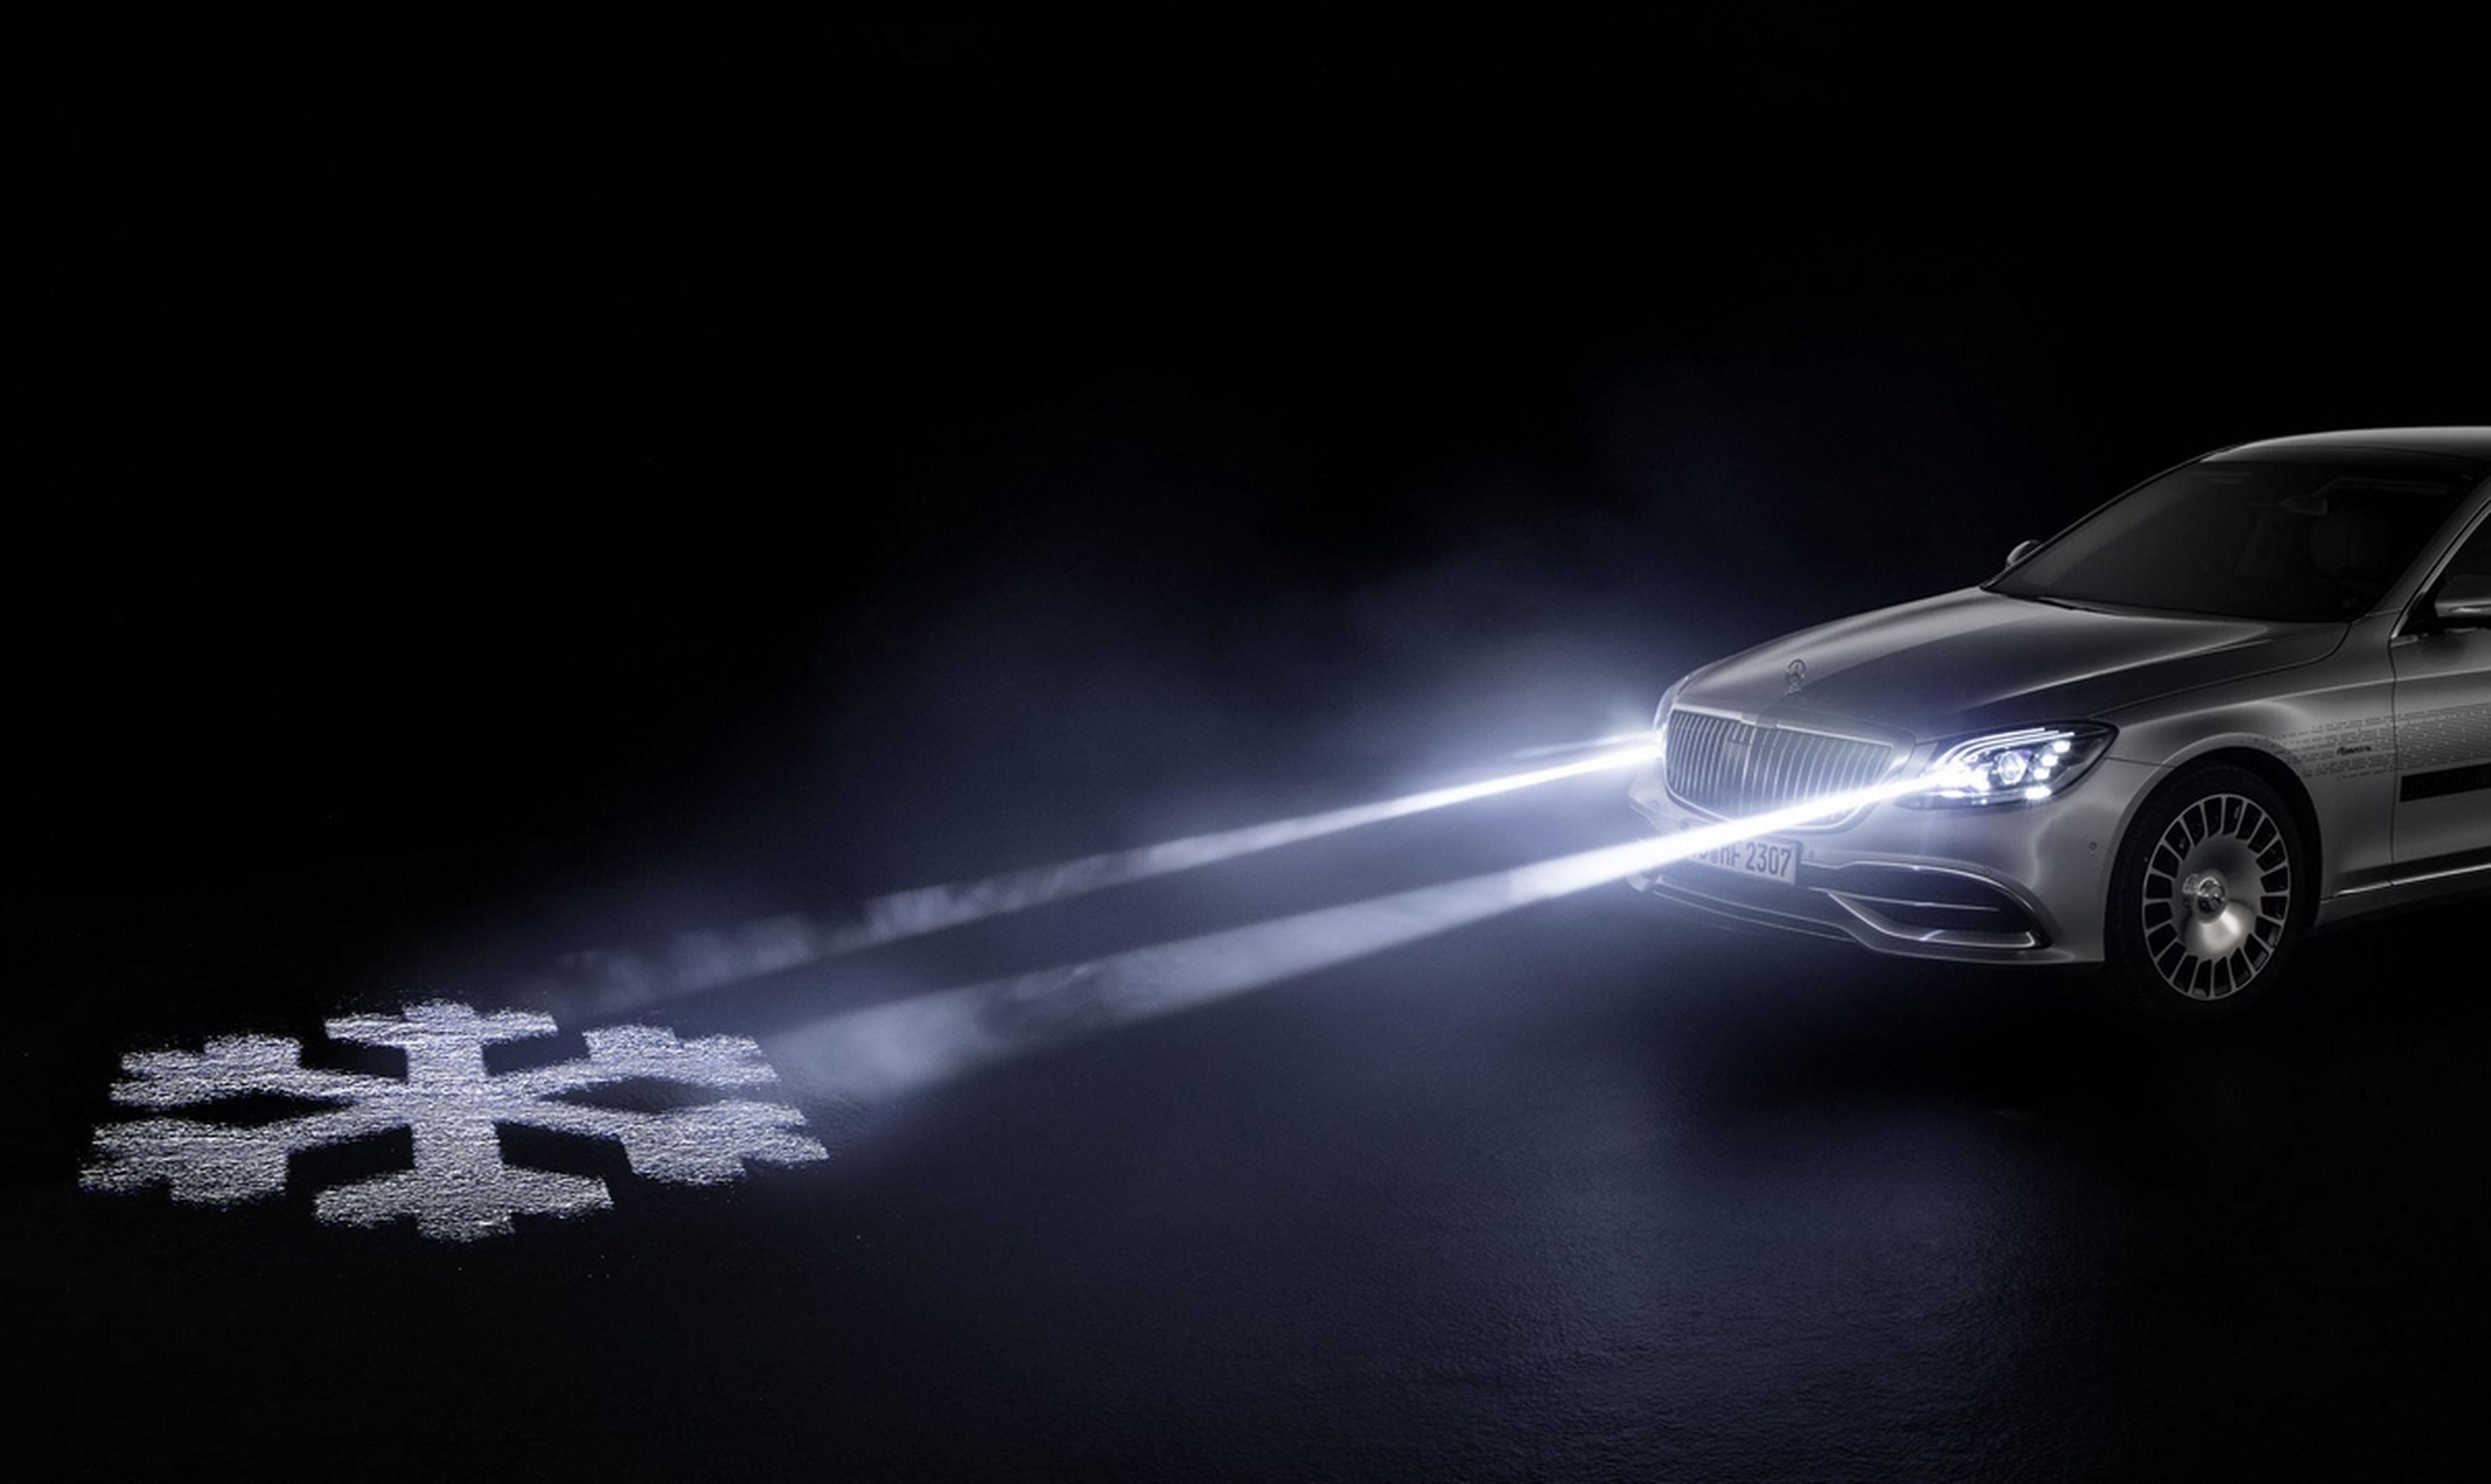 Los faros con proyector de Mercedes-Benz proyectan imágenes en la carretera